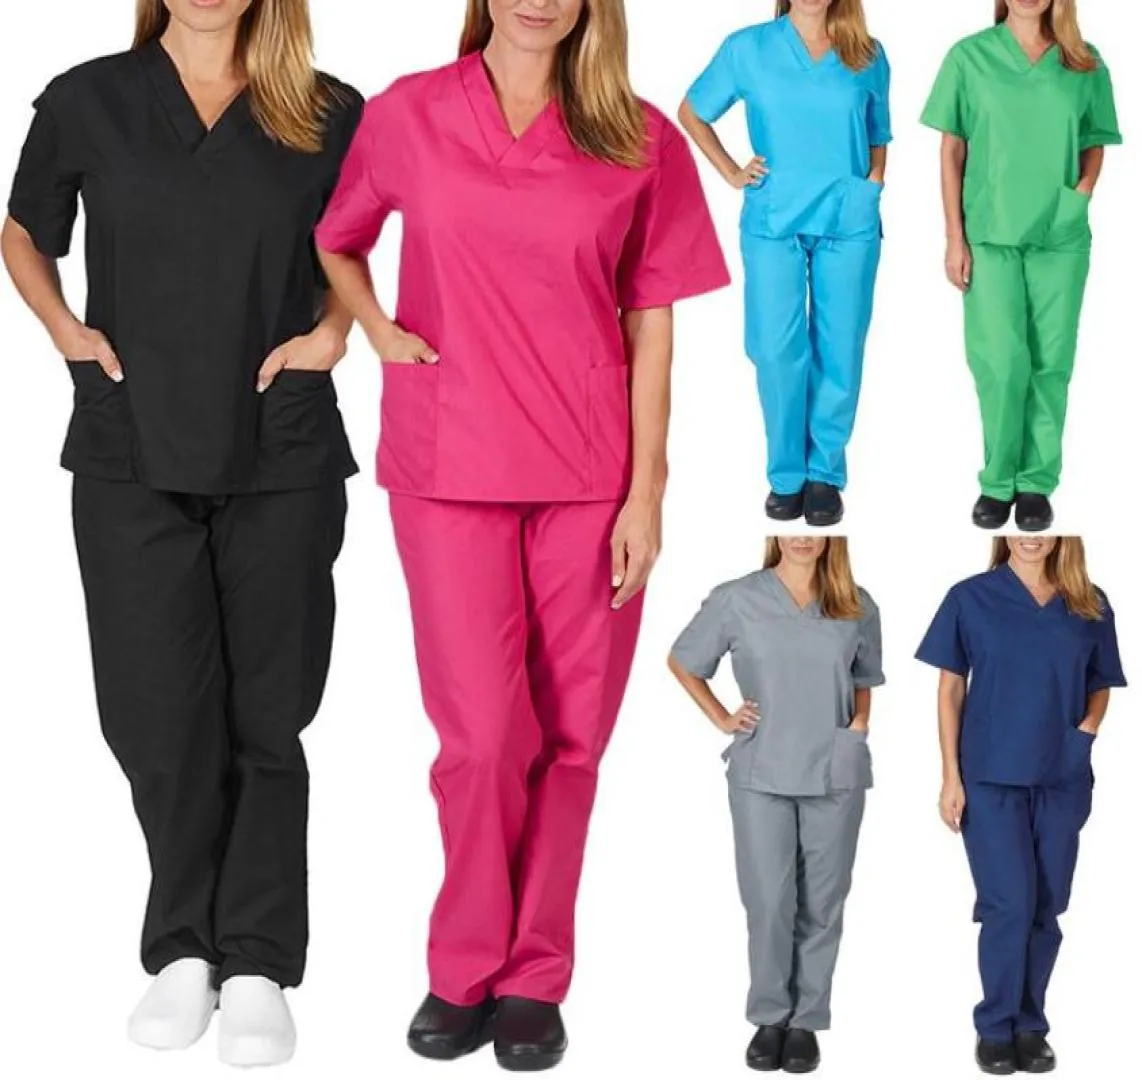 Femmes039s pantalon capris couleur solide unisexe hommes femmes manches courtes v Neck infirmières gommage toppants infirmières